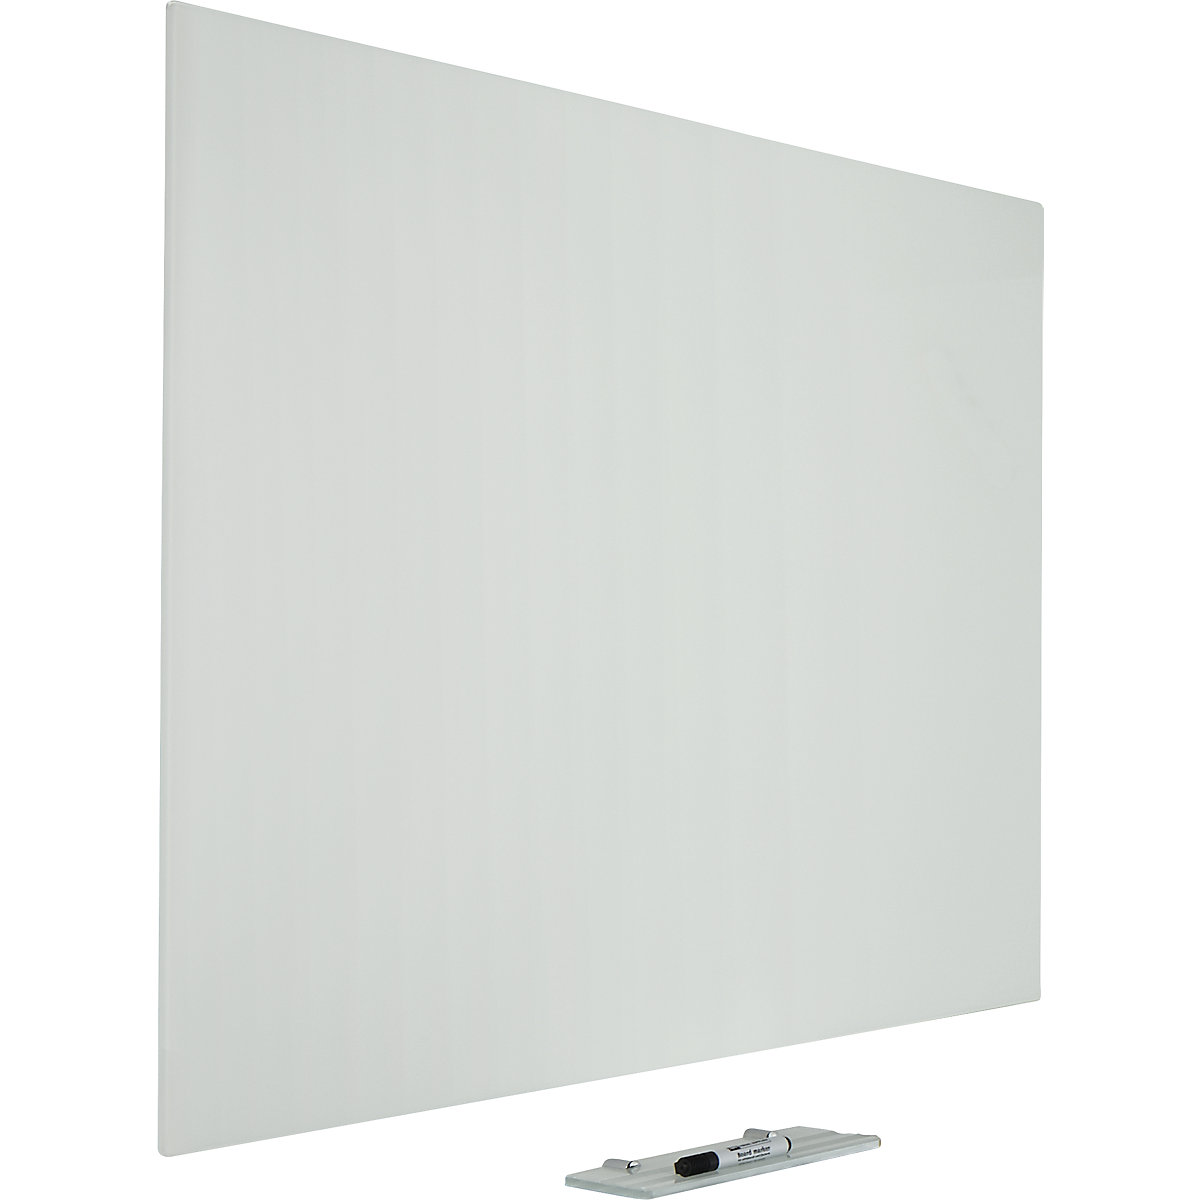 Staklena bijela ploča PREMIUM, emajlirana izvedba, ŠxV 900 x 600 mm